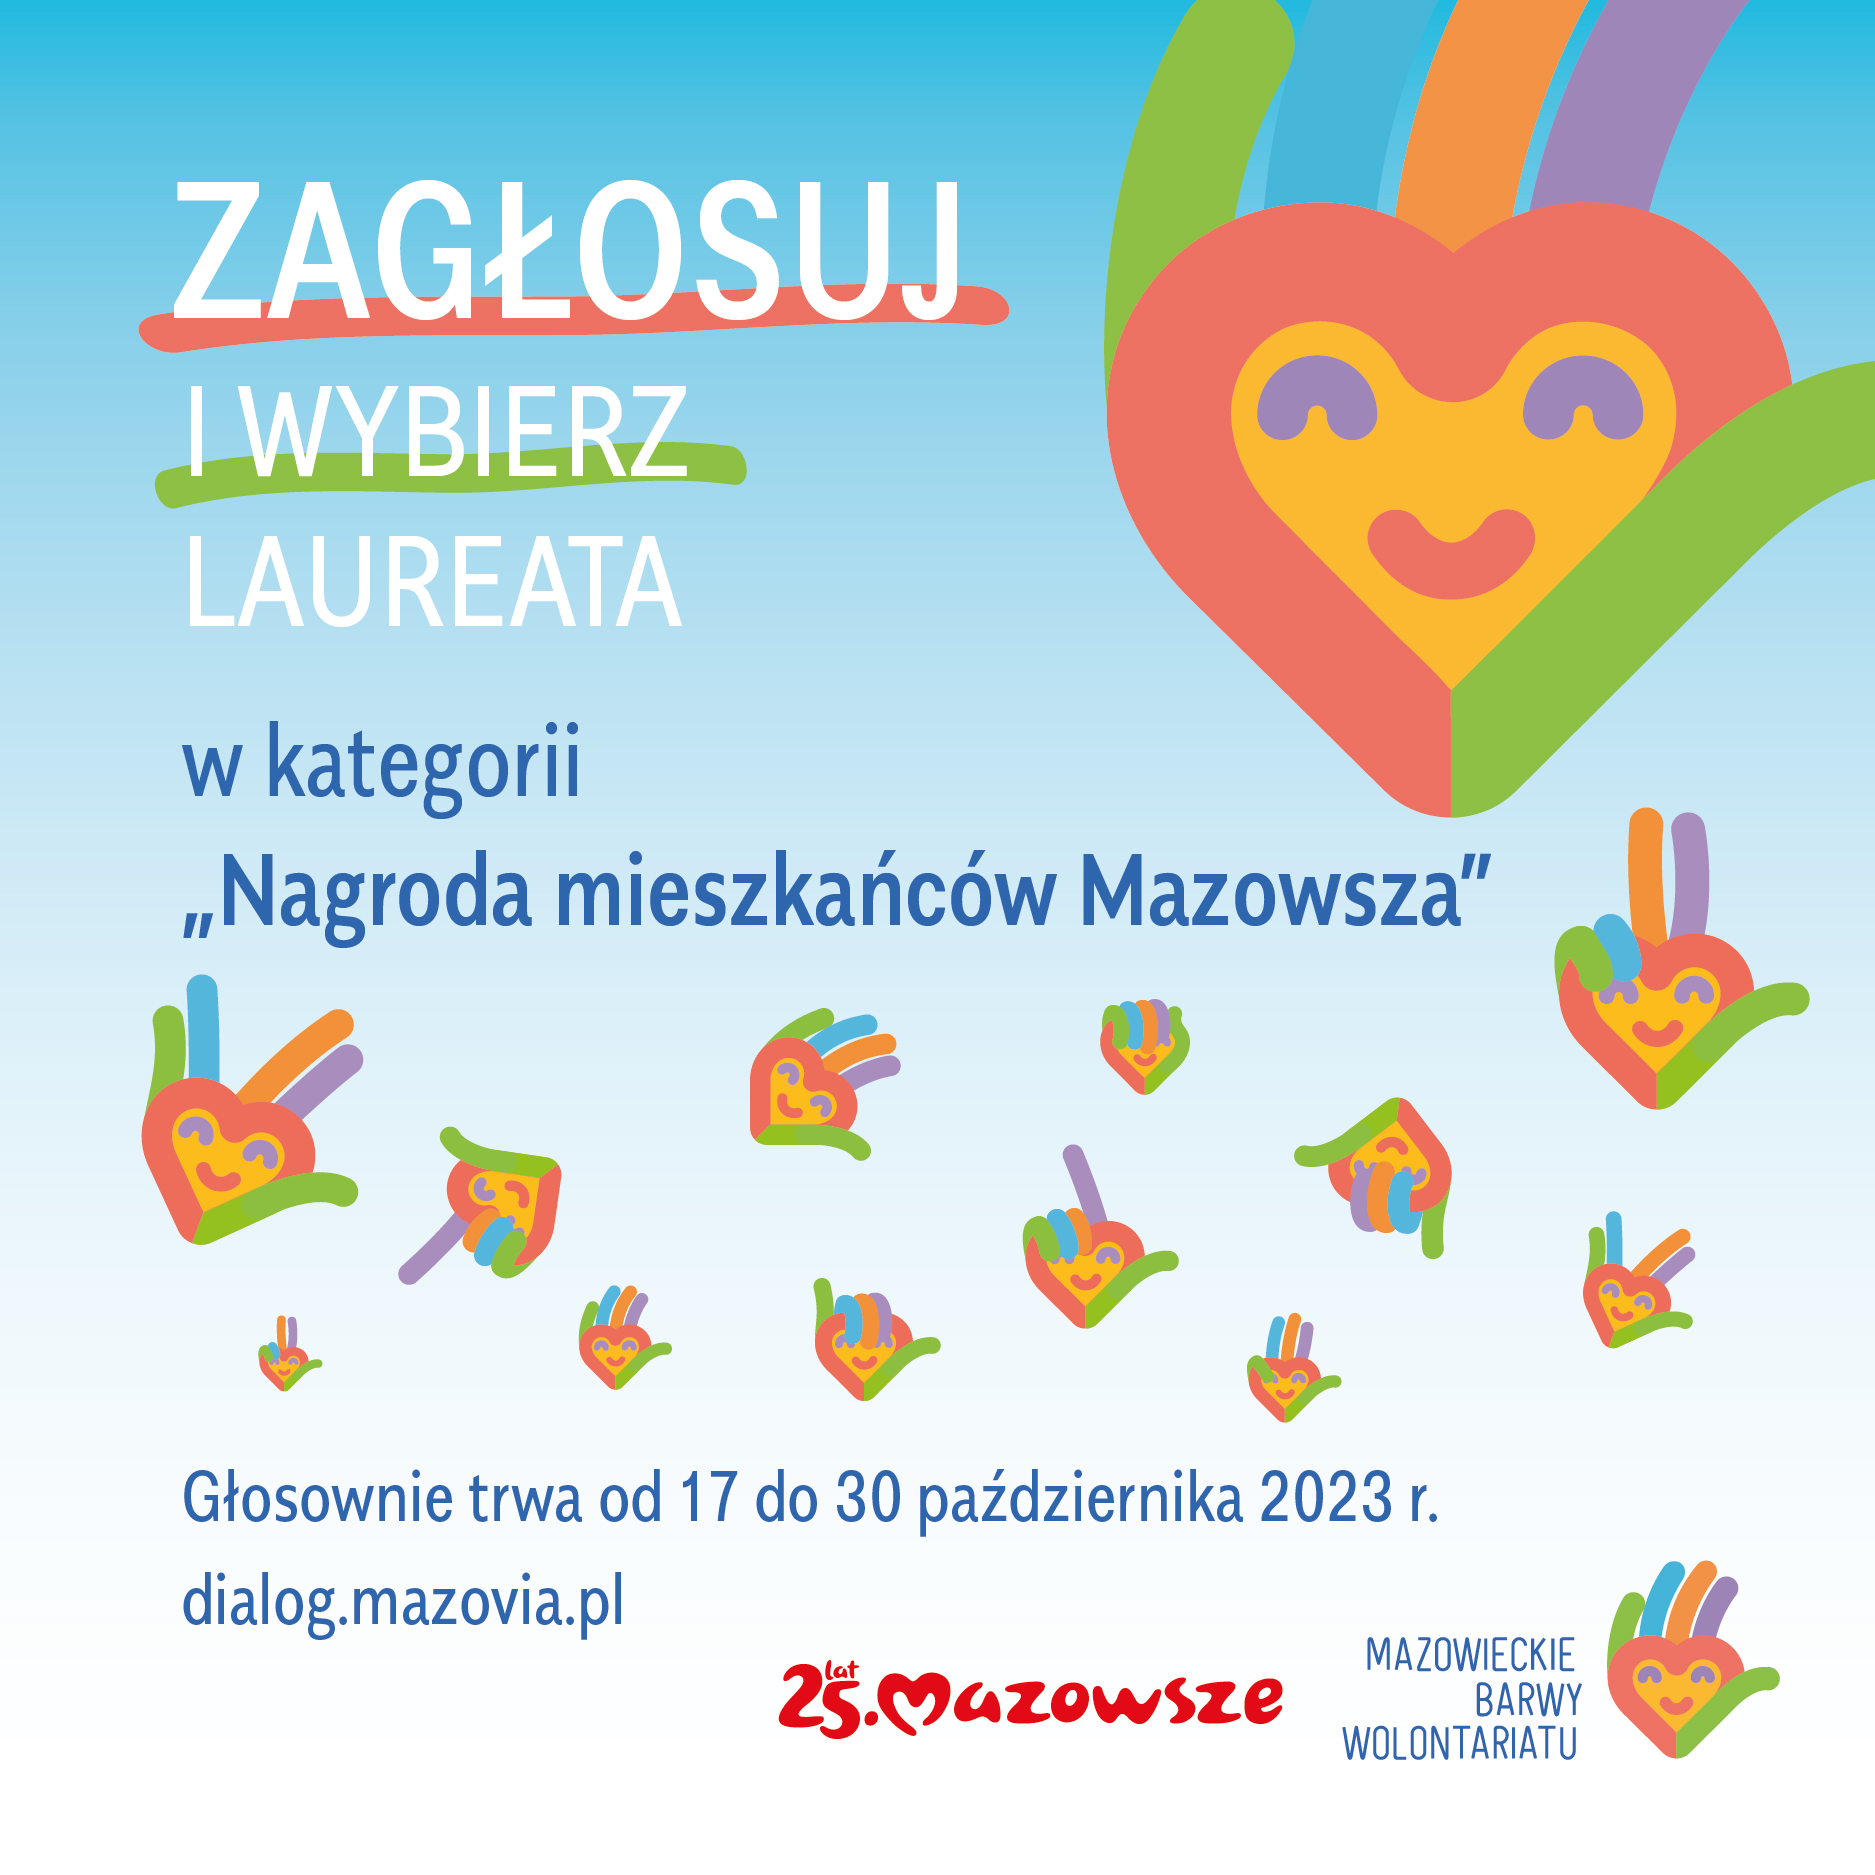 Zagłosuj i wybierz Laureata w kategorii „Nagroda mieszkańców Mazowsza”. Głosownie trwa od 17 do 30 października 2023 r. dialog.mazovia.pl 